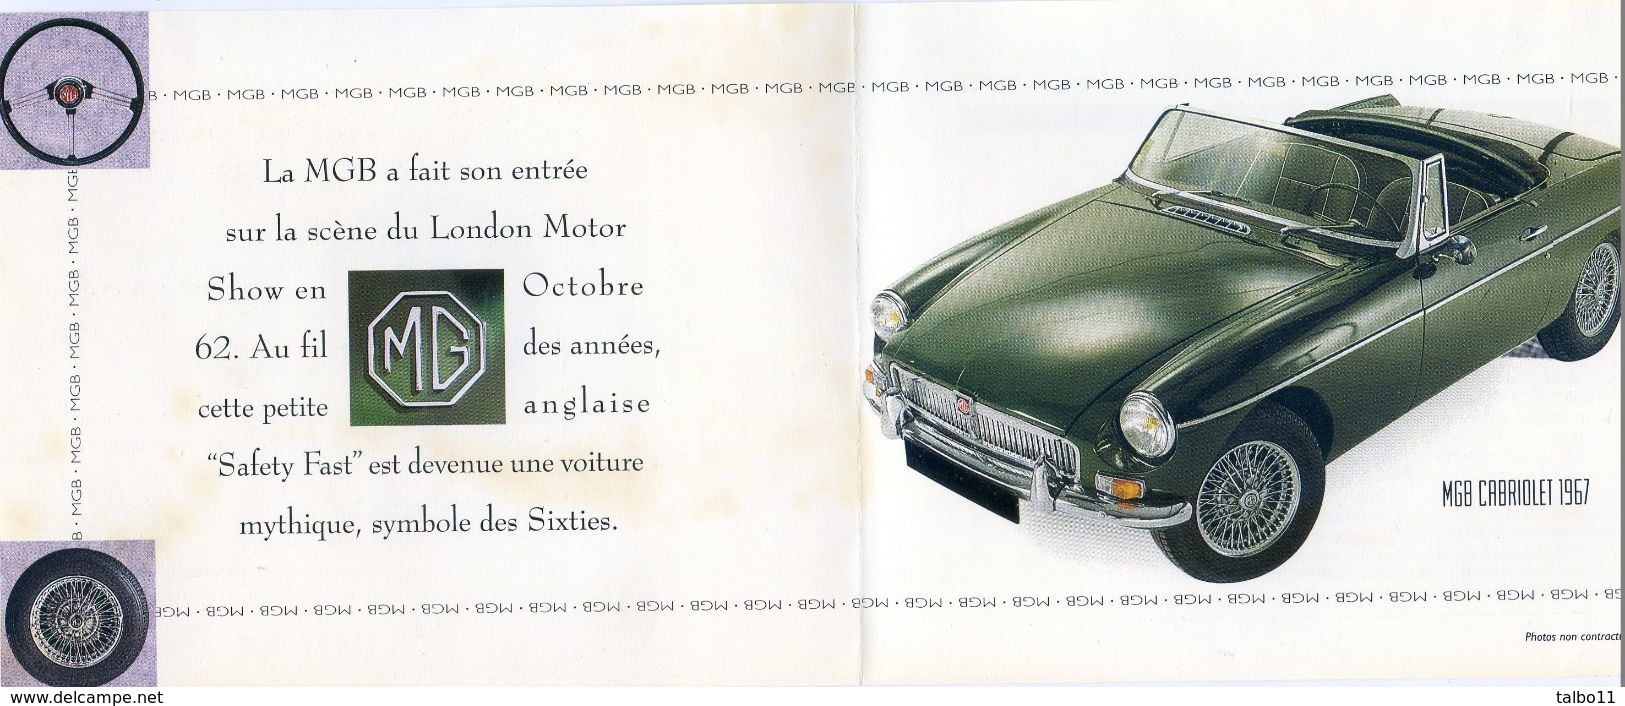 Publicite Pour Voiture MGB Cabriolet 1967  - Grardel Garagiste à Gryvelde 59 - Reclame